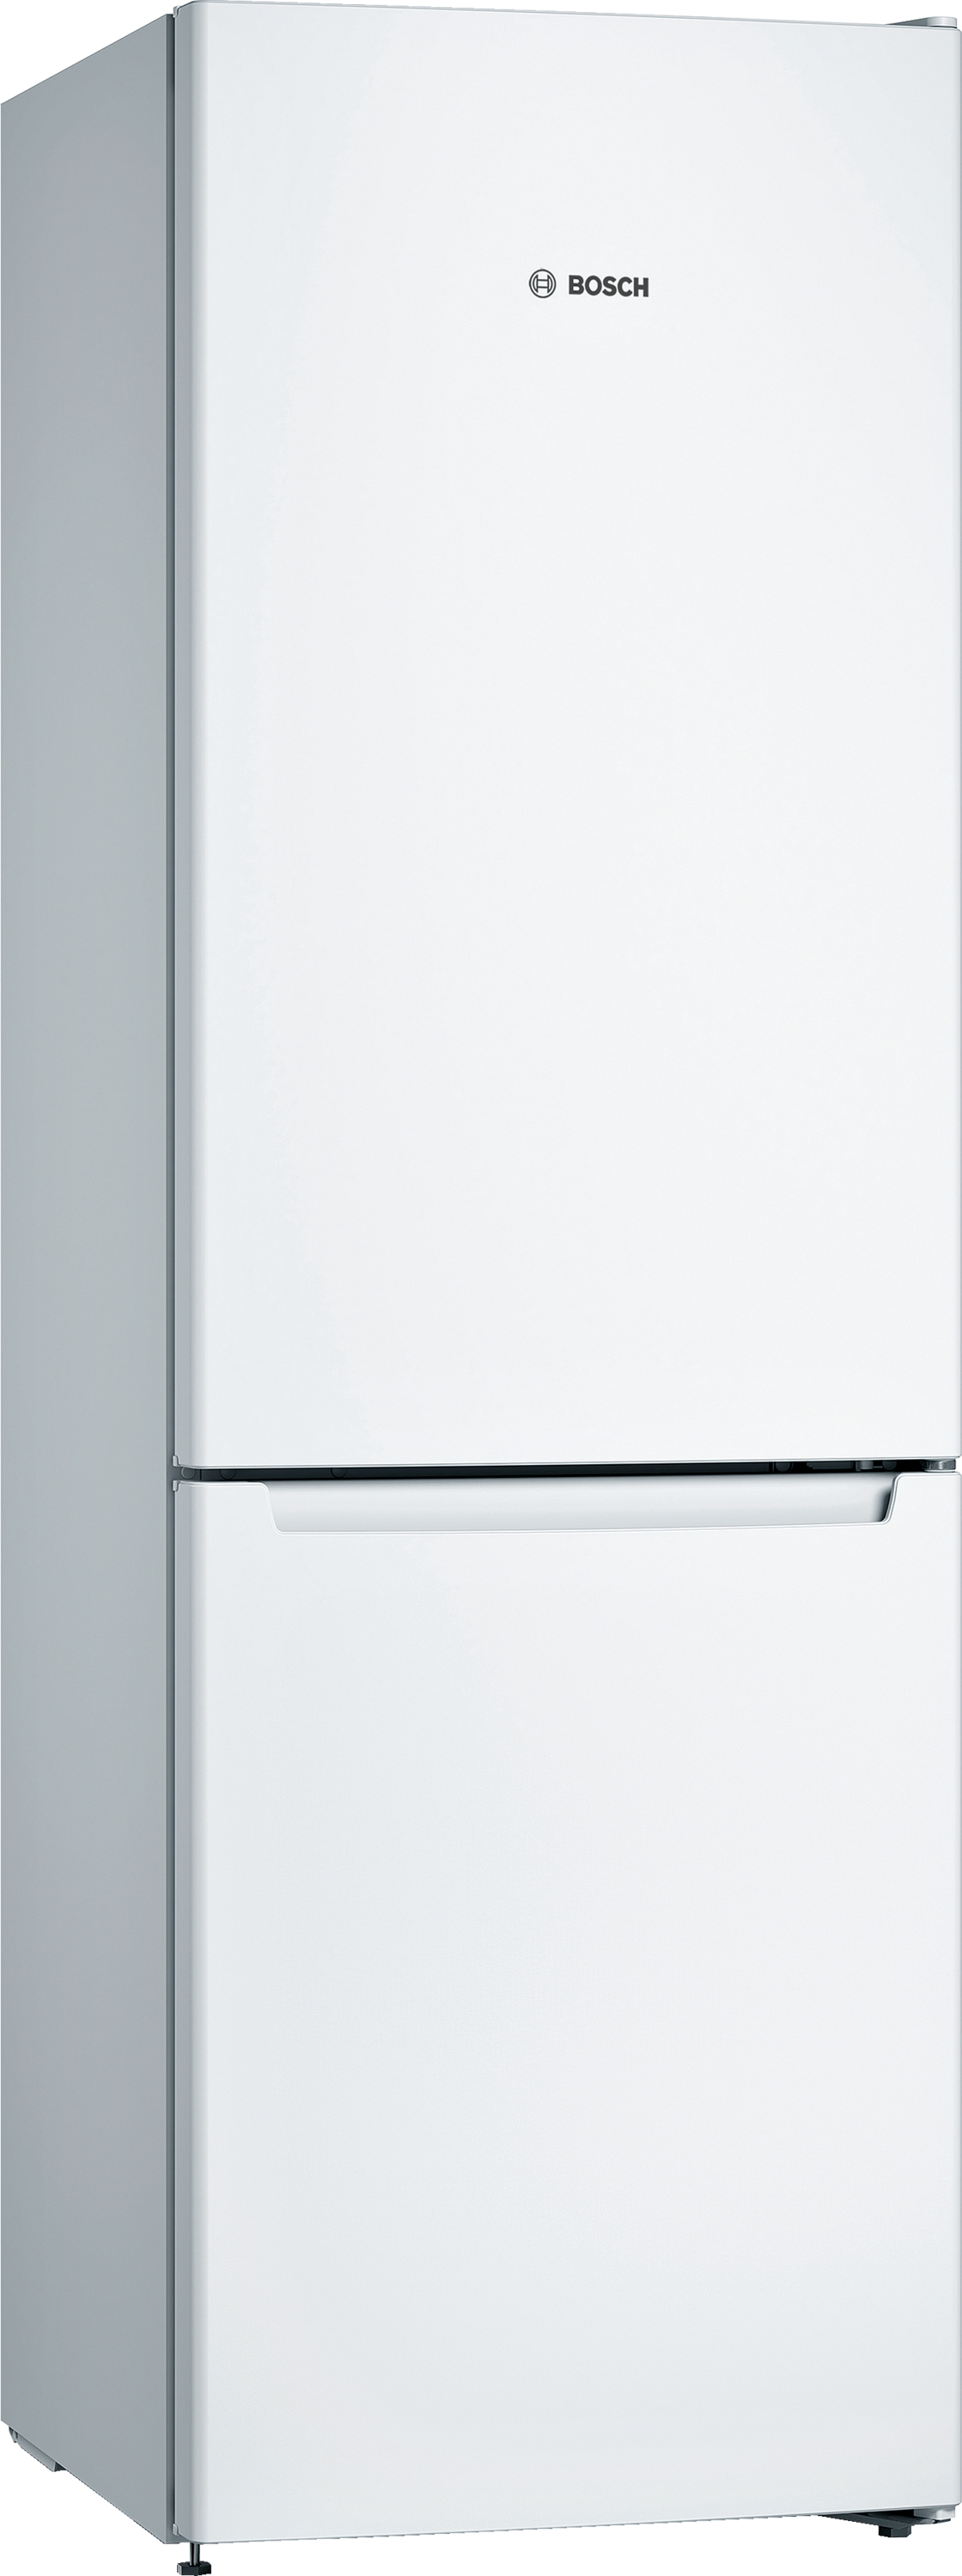 KGN36NWEA, Samostojeći frižider sa zamrzivačem dole